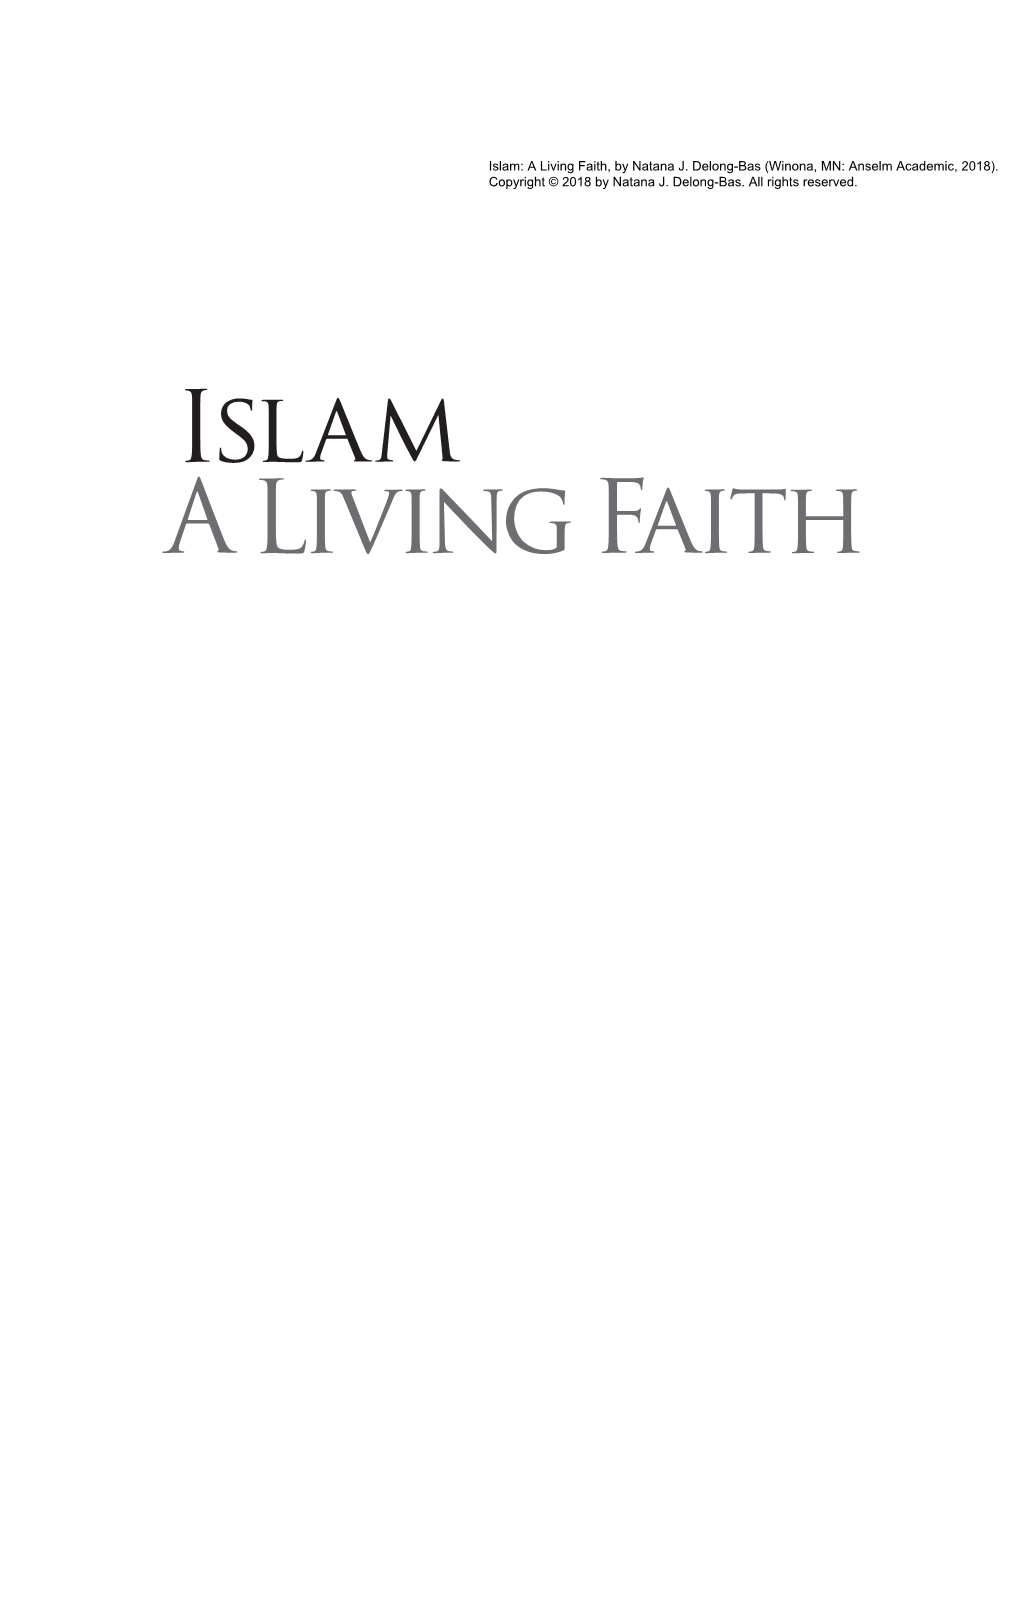 A Living Faith, by Natana J